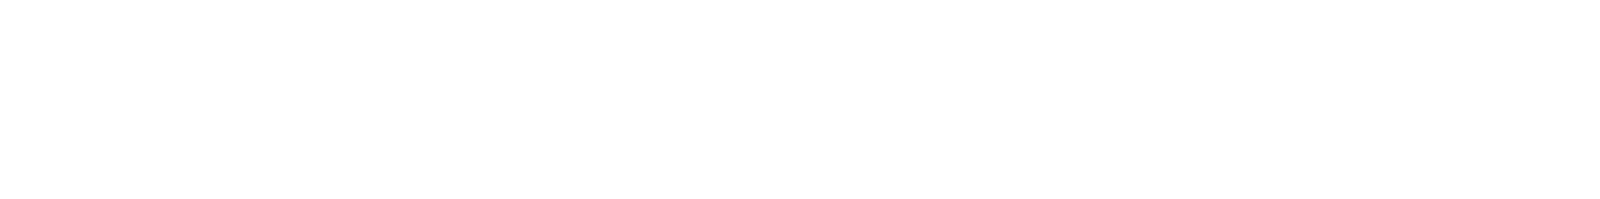 チャットモンチーの徳島こなそんそんフェス2018 〜みな、おいでなしてよ！〜 2018.7.21(土)/7.22(日) アスティとくしまにて!